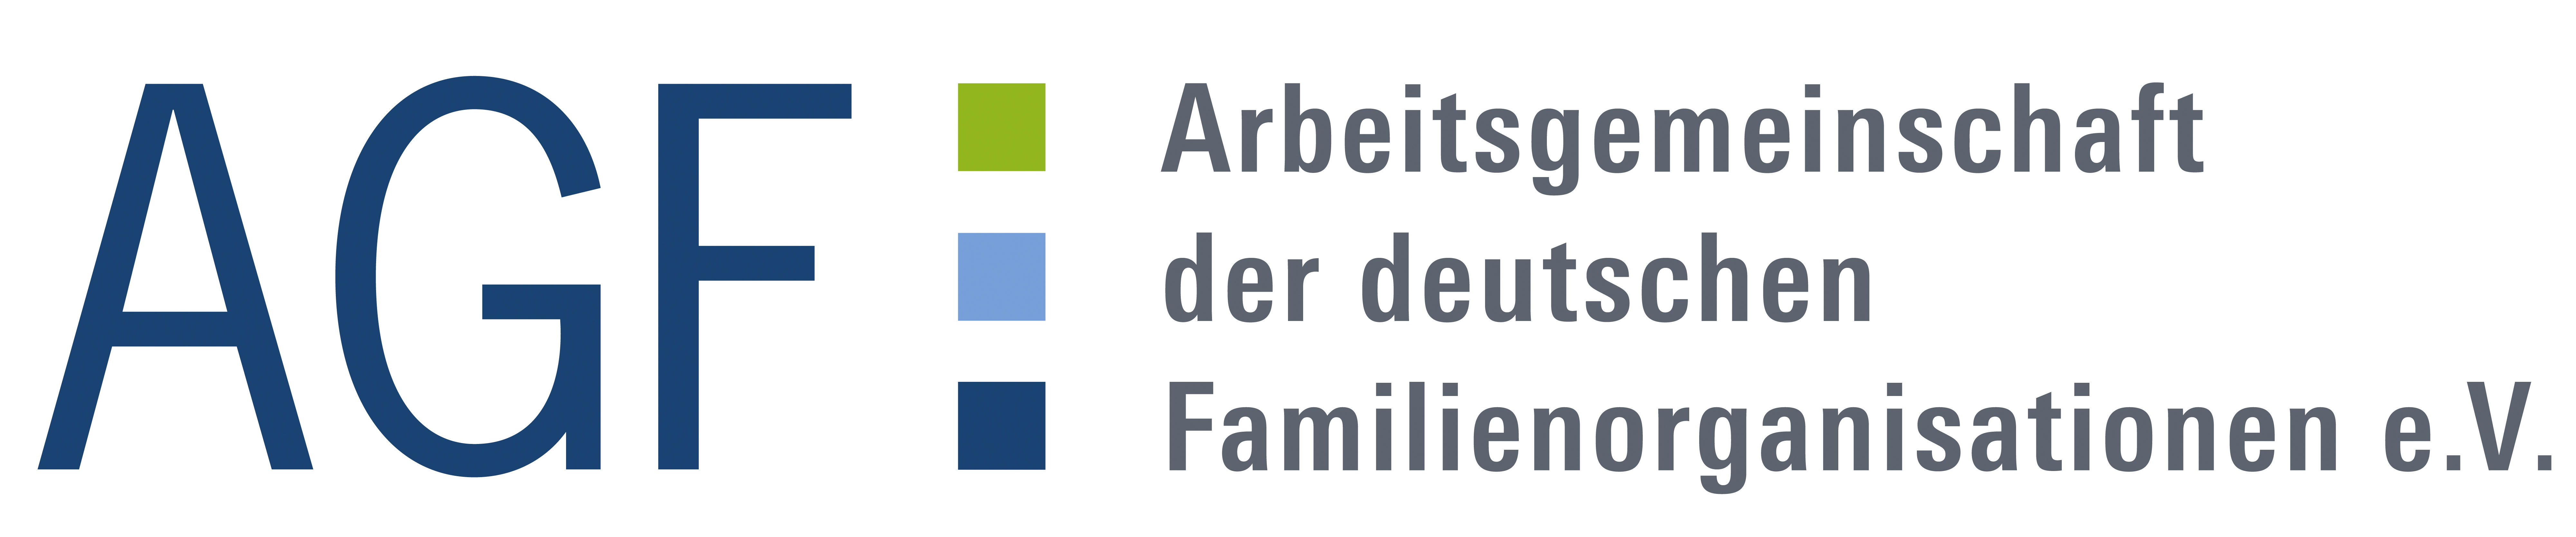 Arbeitsgemeinschaft der deutschen Familienorganisationen e.V.